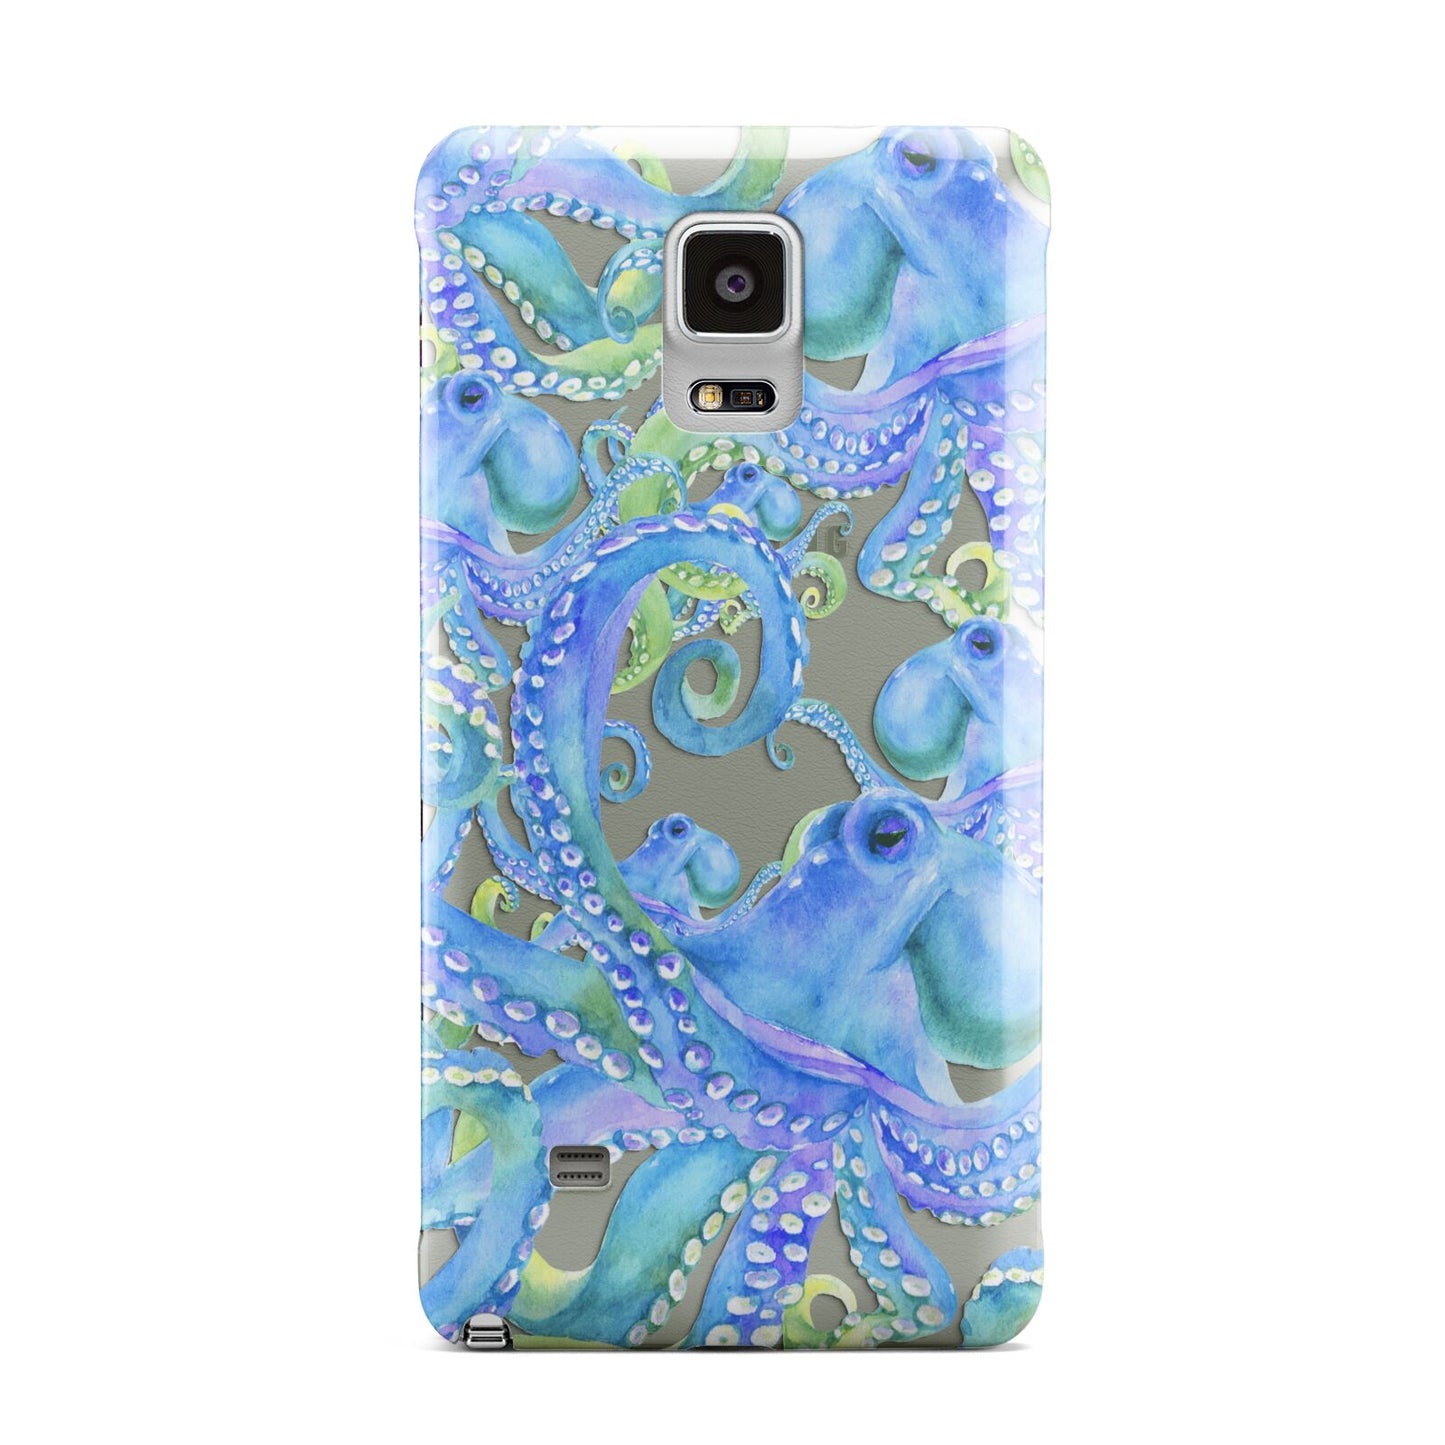 Octopus Samsung Galaxy Note 4 Case